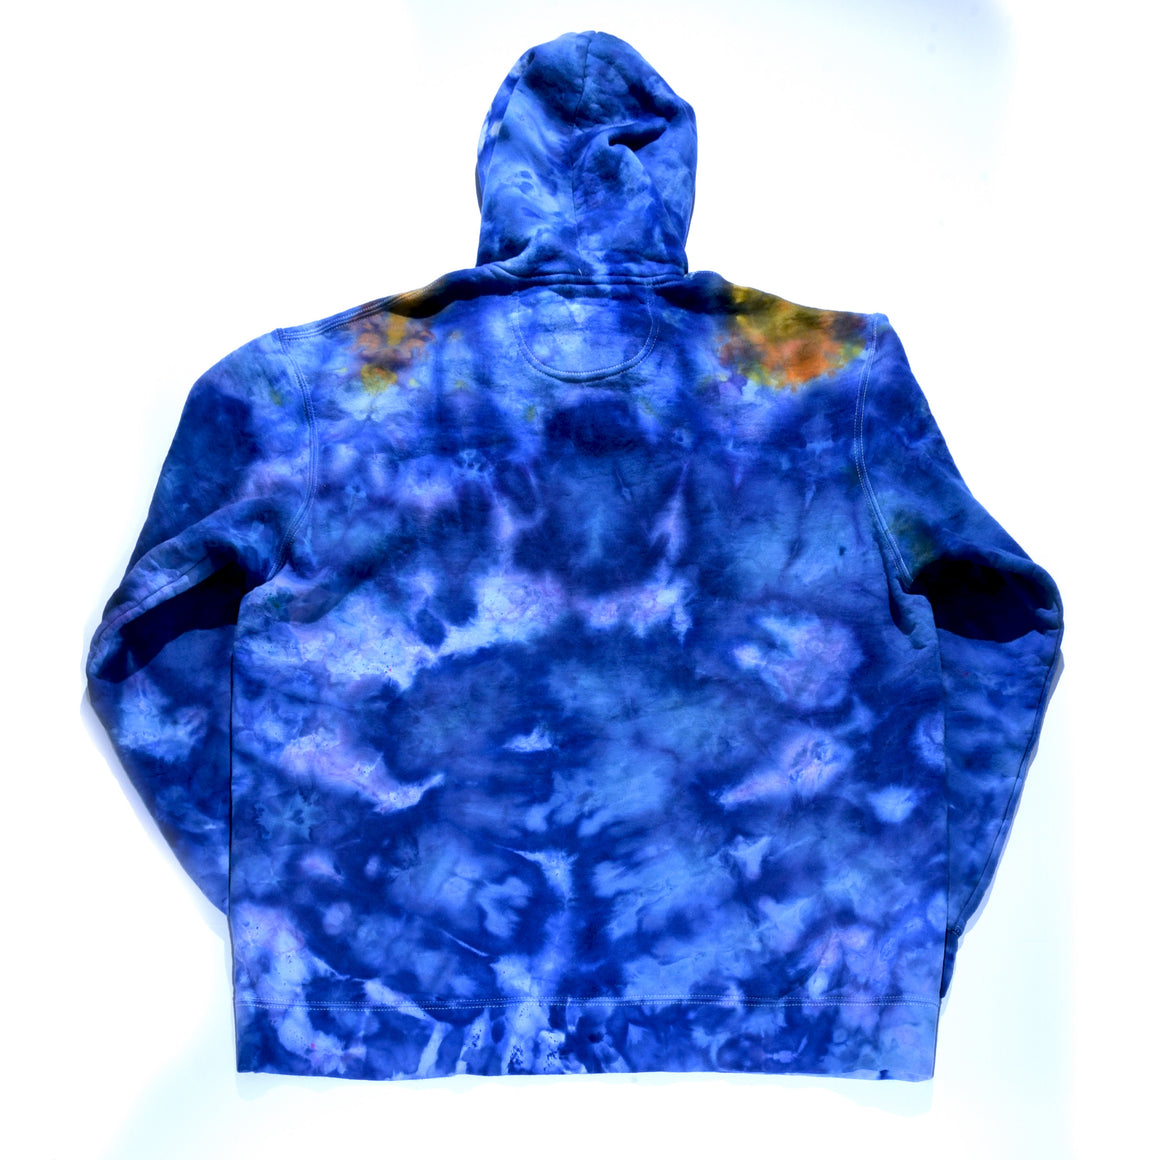 XL Tie Dye Sweatshirt - Blue w/ Psychedelic Flower